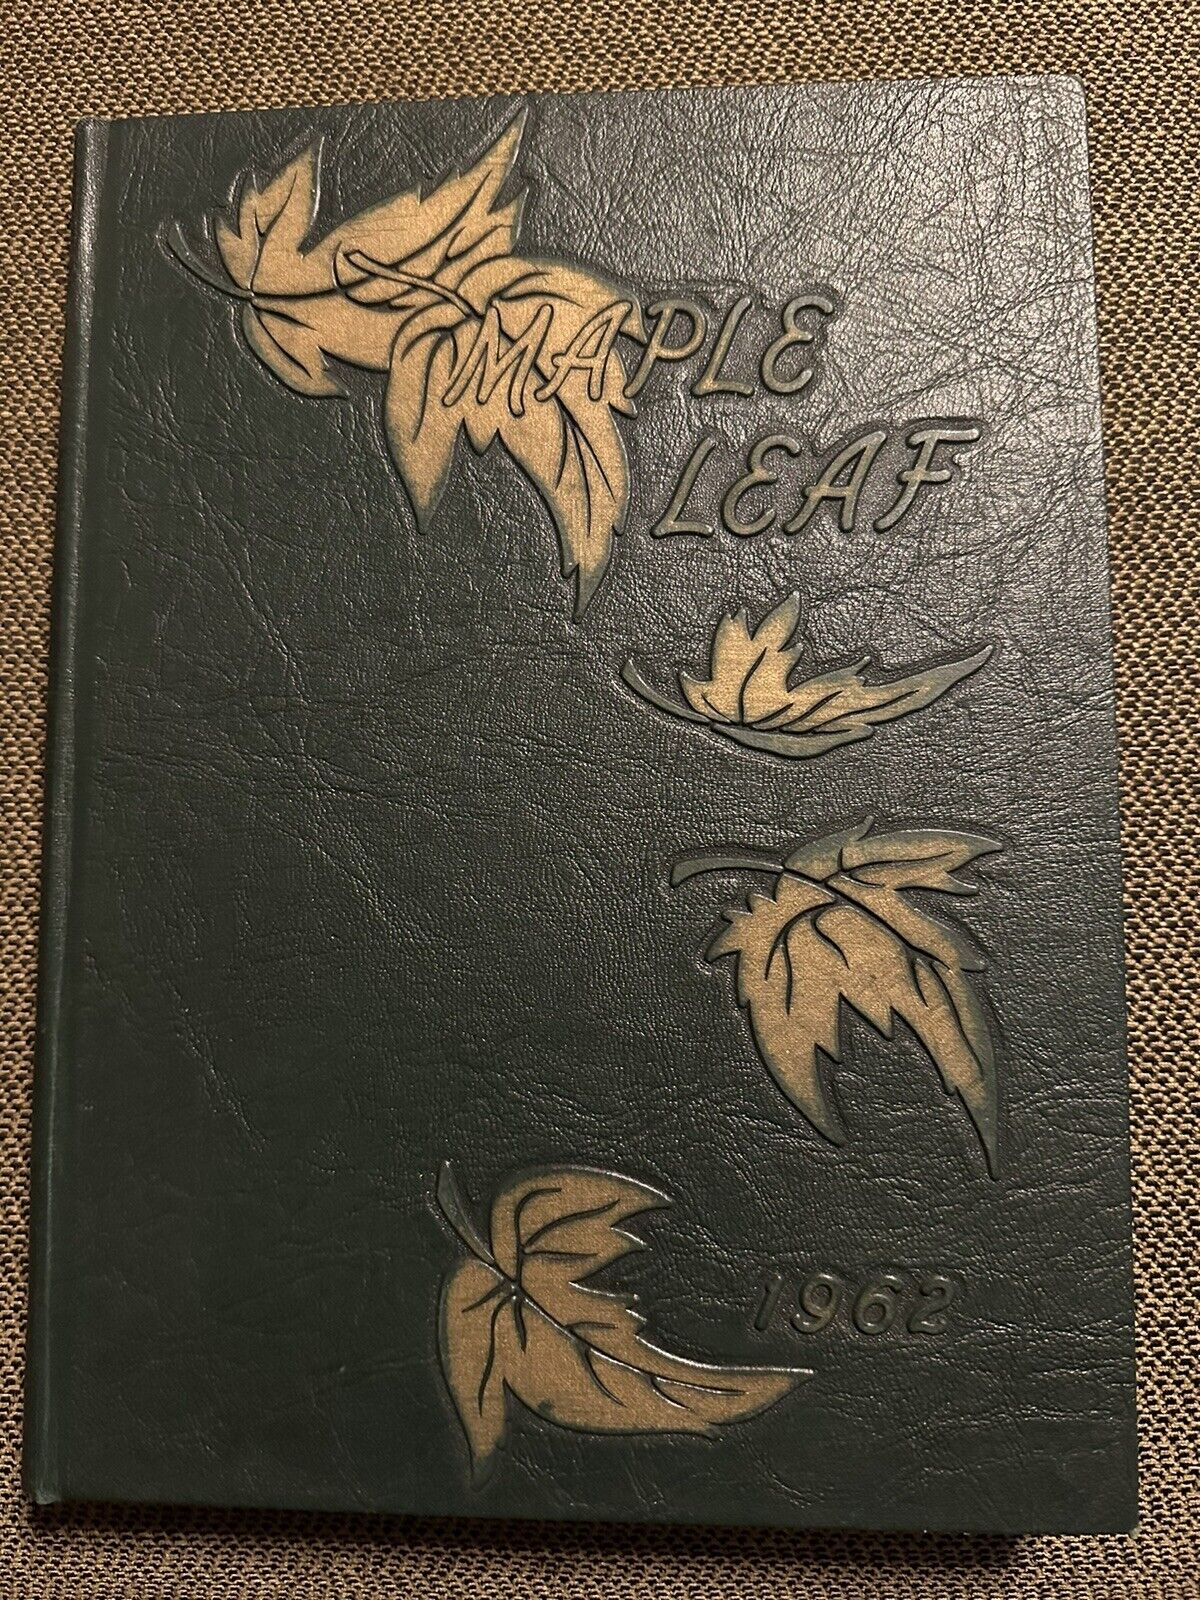 1962 Goshen College Yearbook - Goshen, Indiana. Maple Leaf. Stunning Yearbook